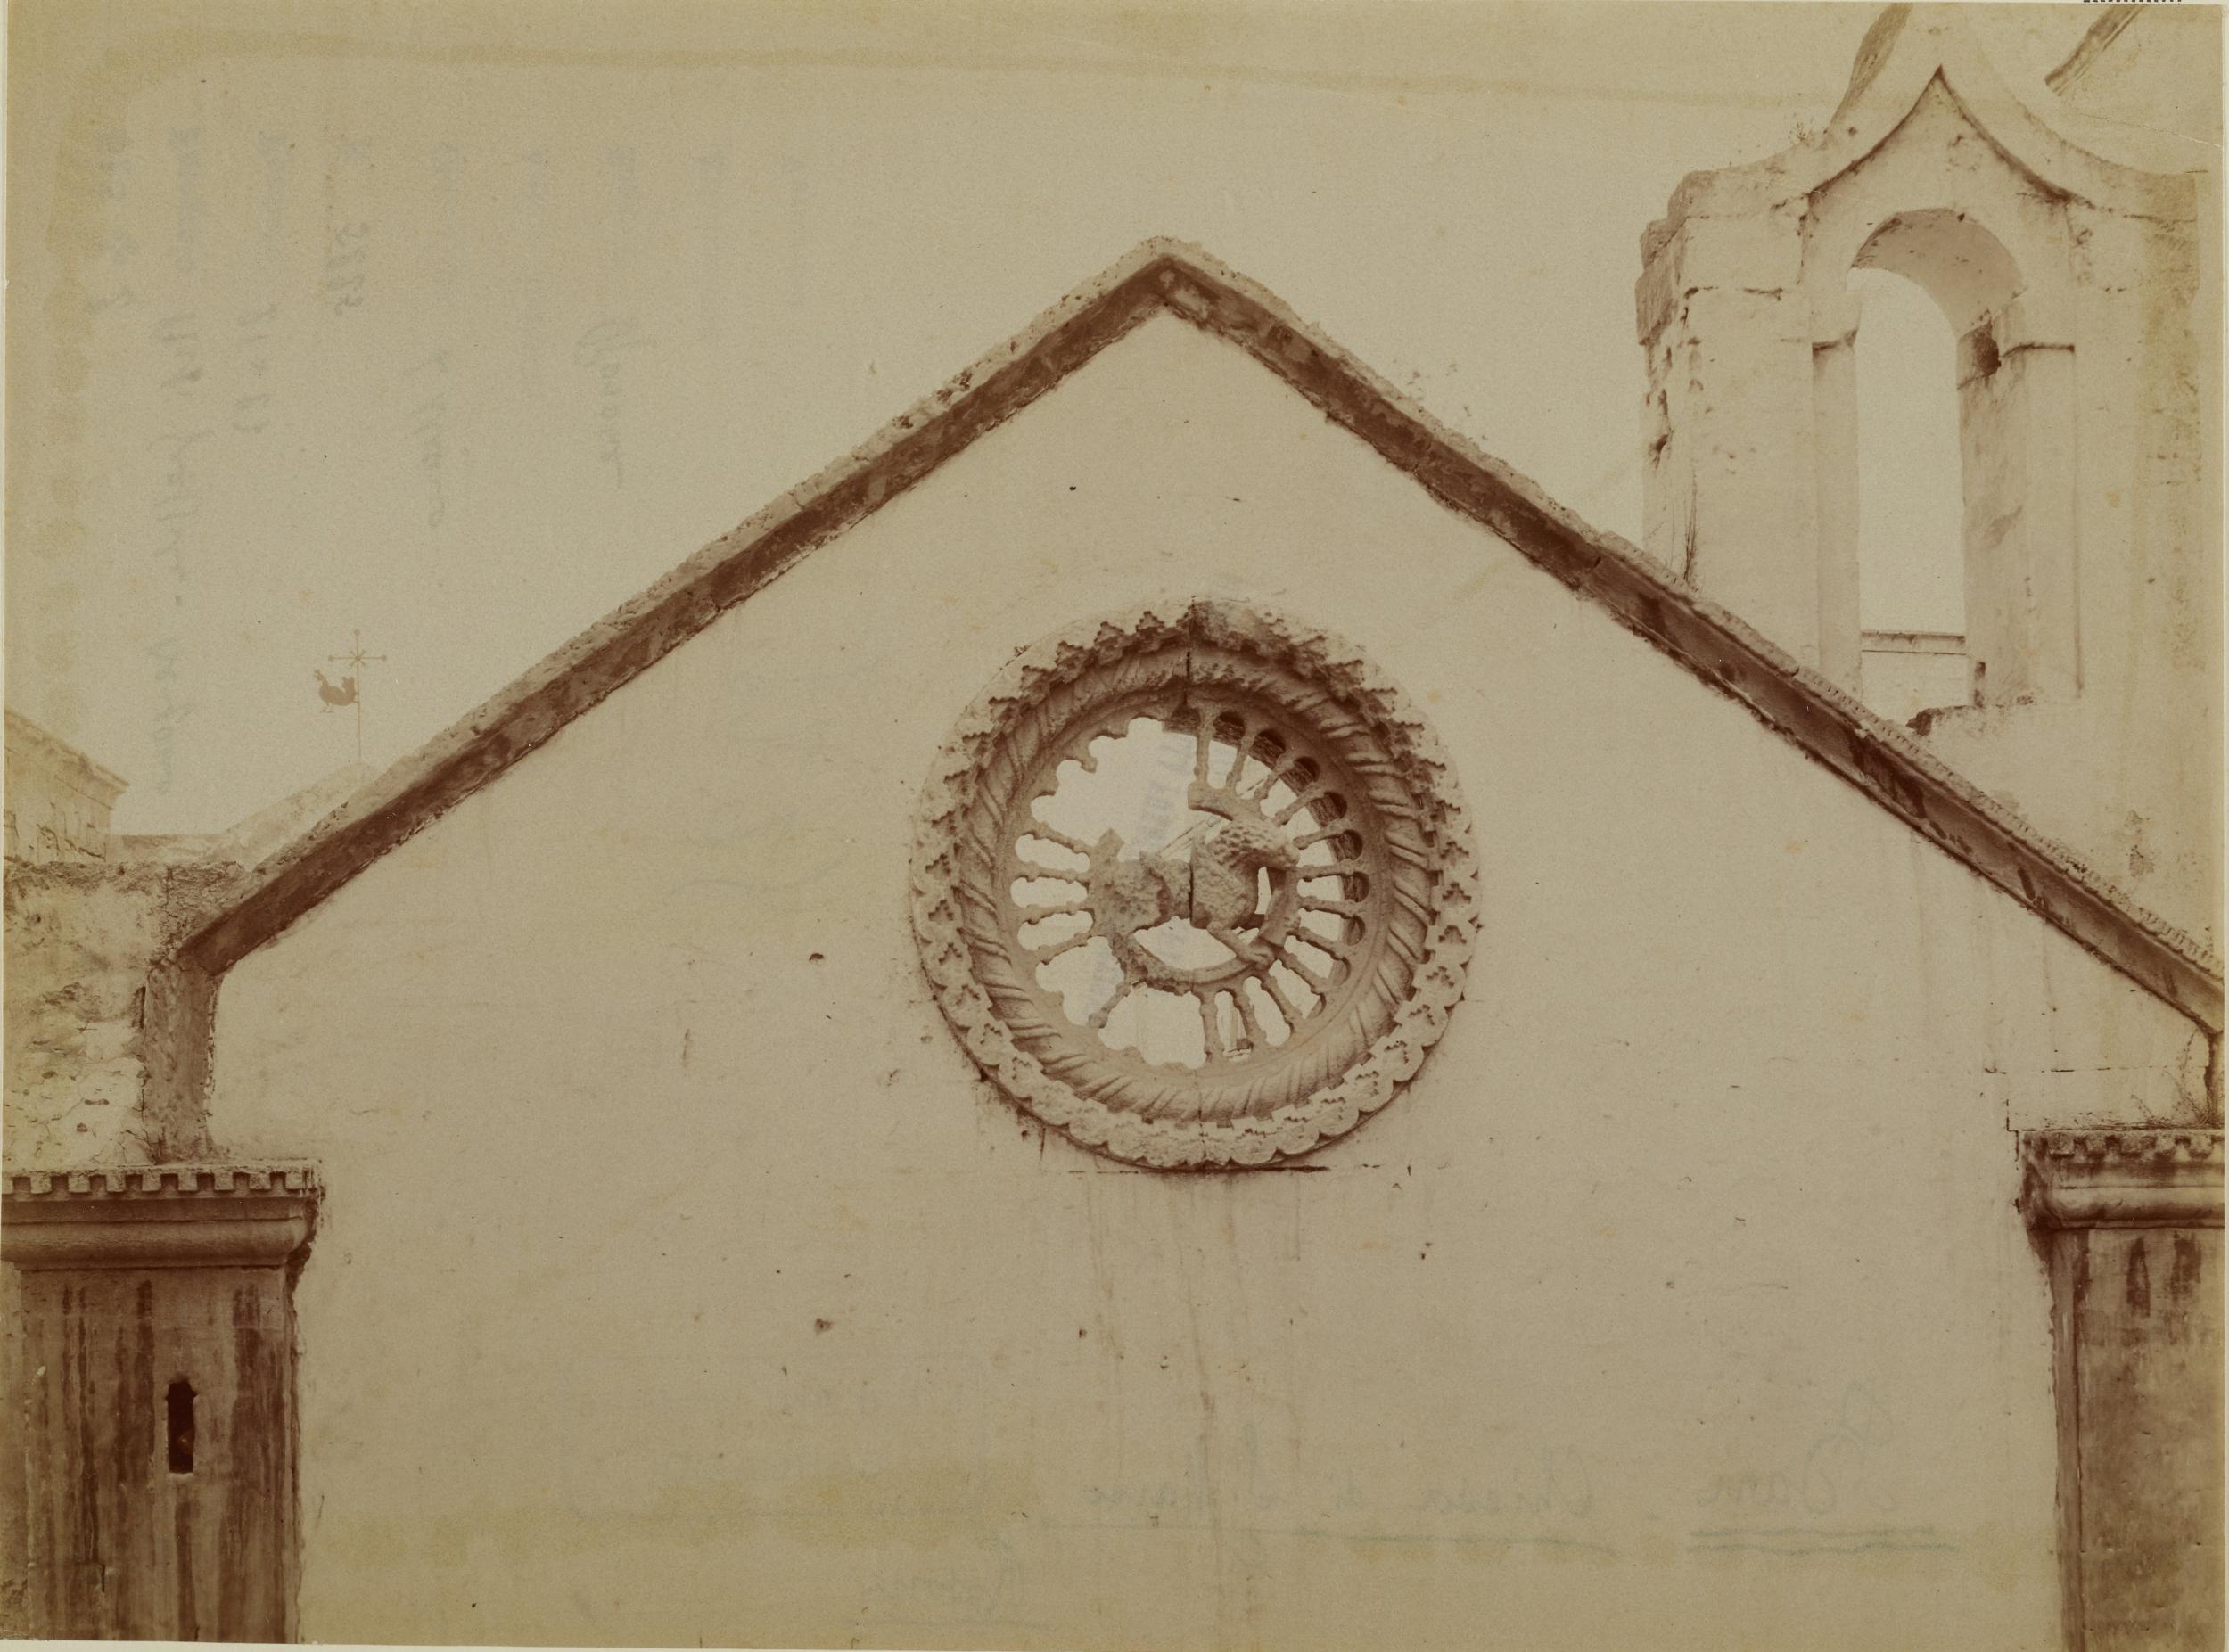 Fotografo non identificato, Bari - Chiesa di S. Marco, rosone con simbolo di S. Marco Evangelista, 1901-1910, albumina/carta, MPI136721